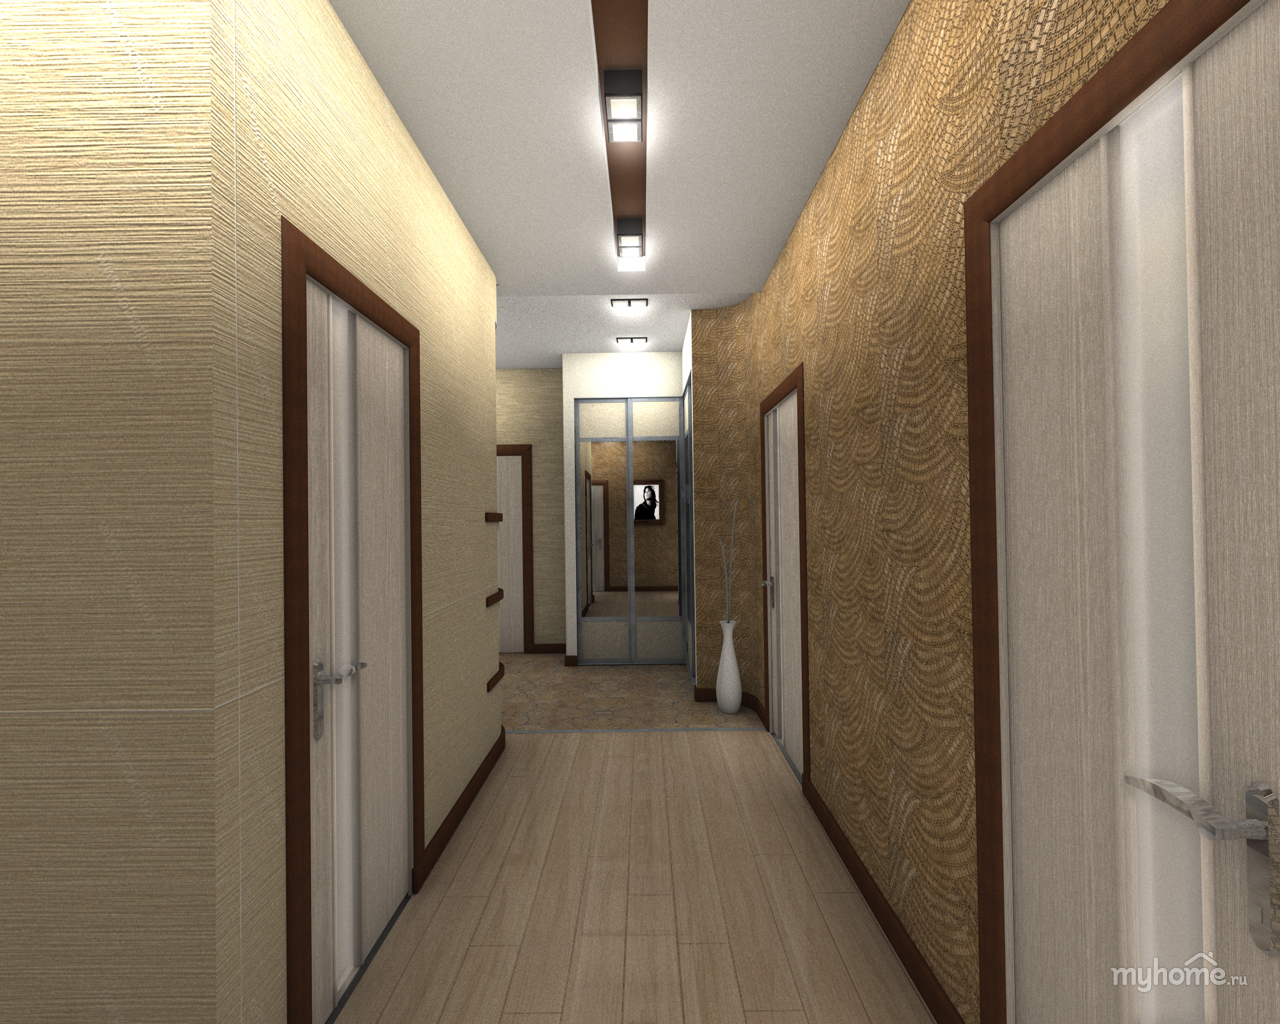 Обои в коридор узкий: идеи для узкого длинного коридора в квартире или прихожей